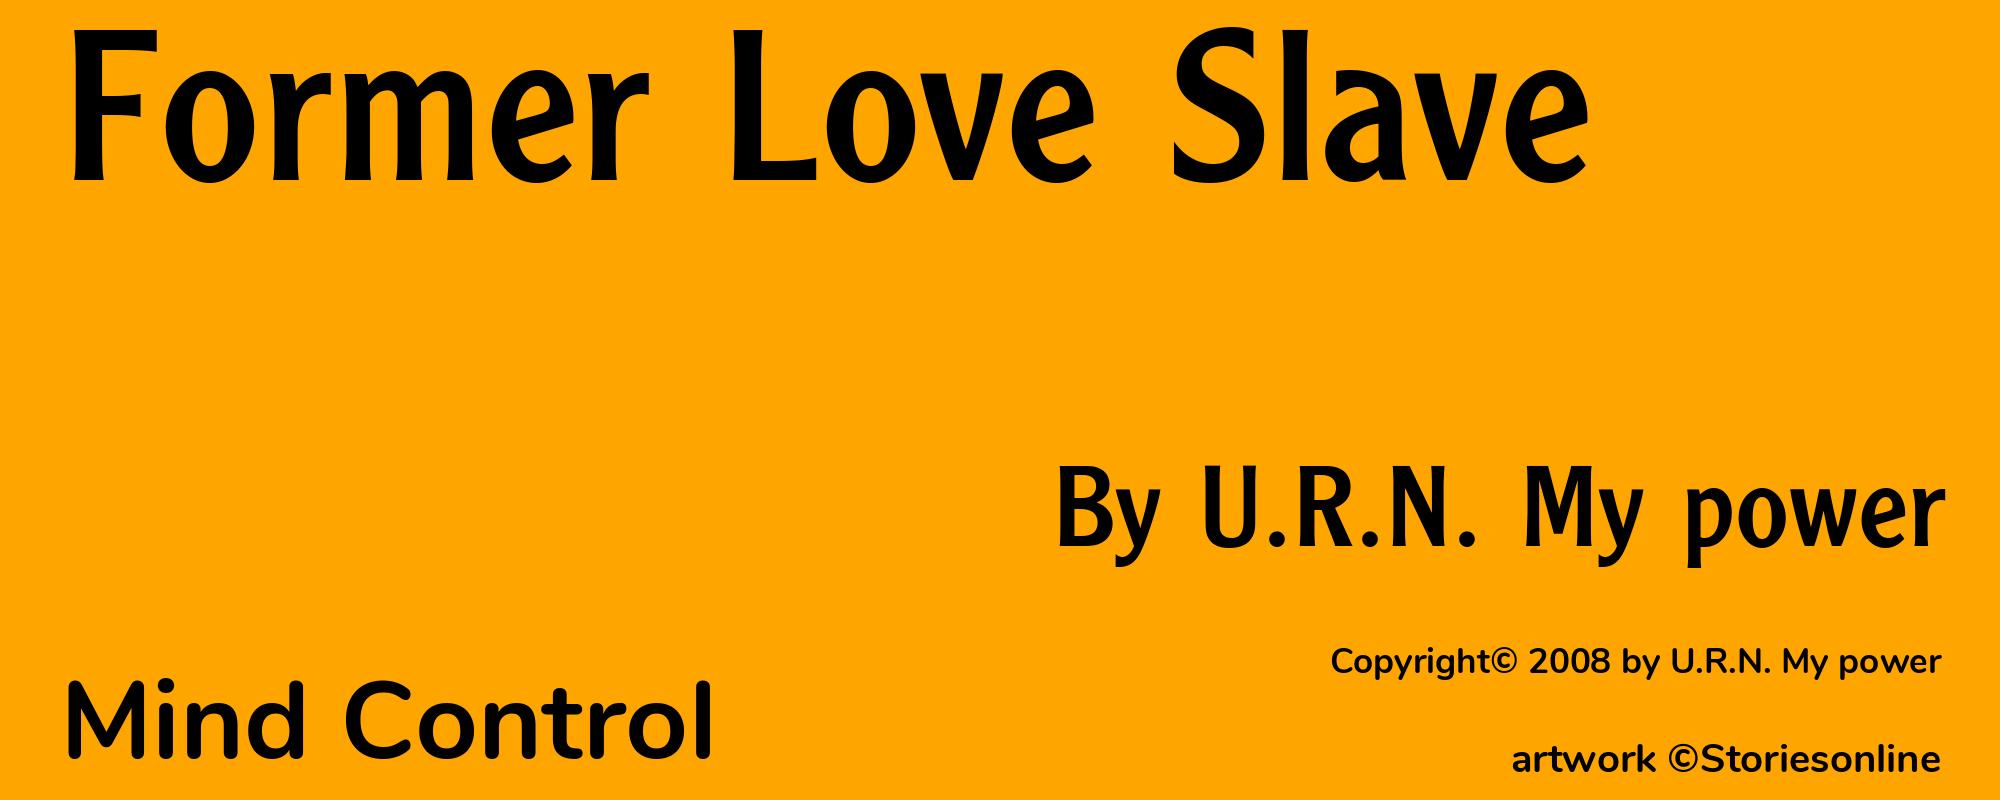 Former Love Slave - Cover